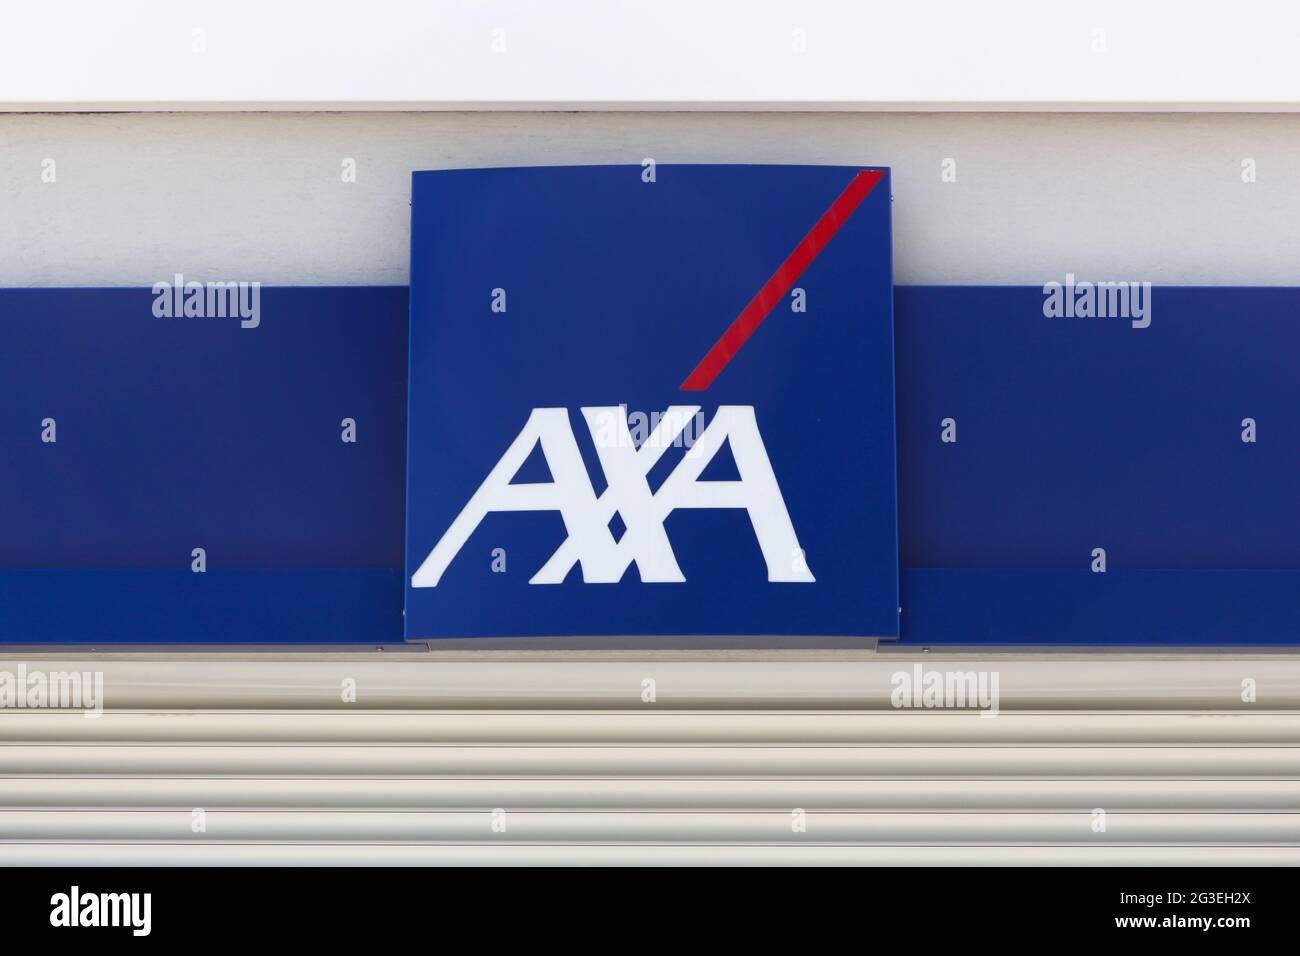 Reyrieux, Francia - 28 maggio 2017: Logo assicurativo AXA su un muro. AXA è una multinazionale francese di assicurazioni che si occupa di assicurazioni globali Foto Stock